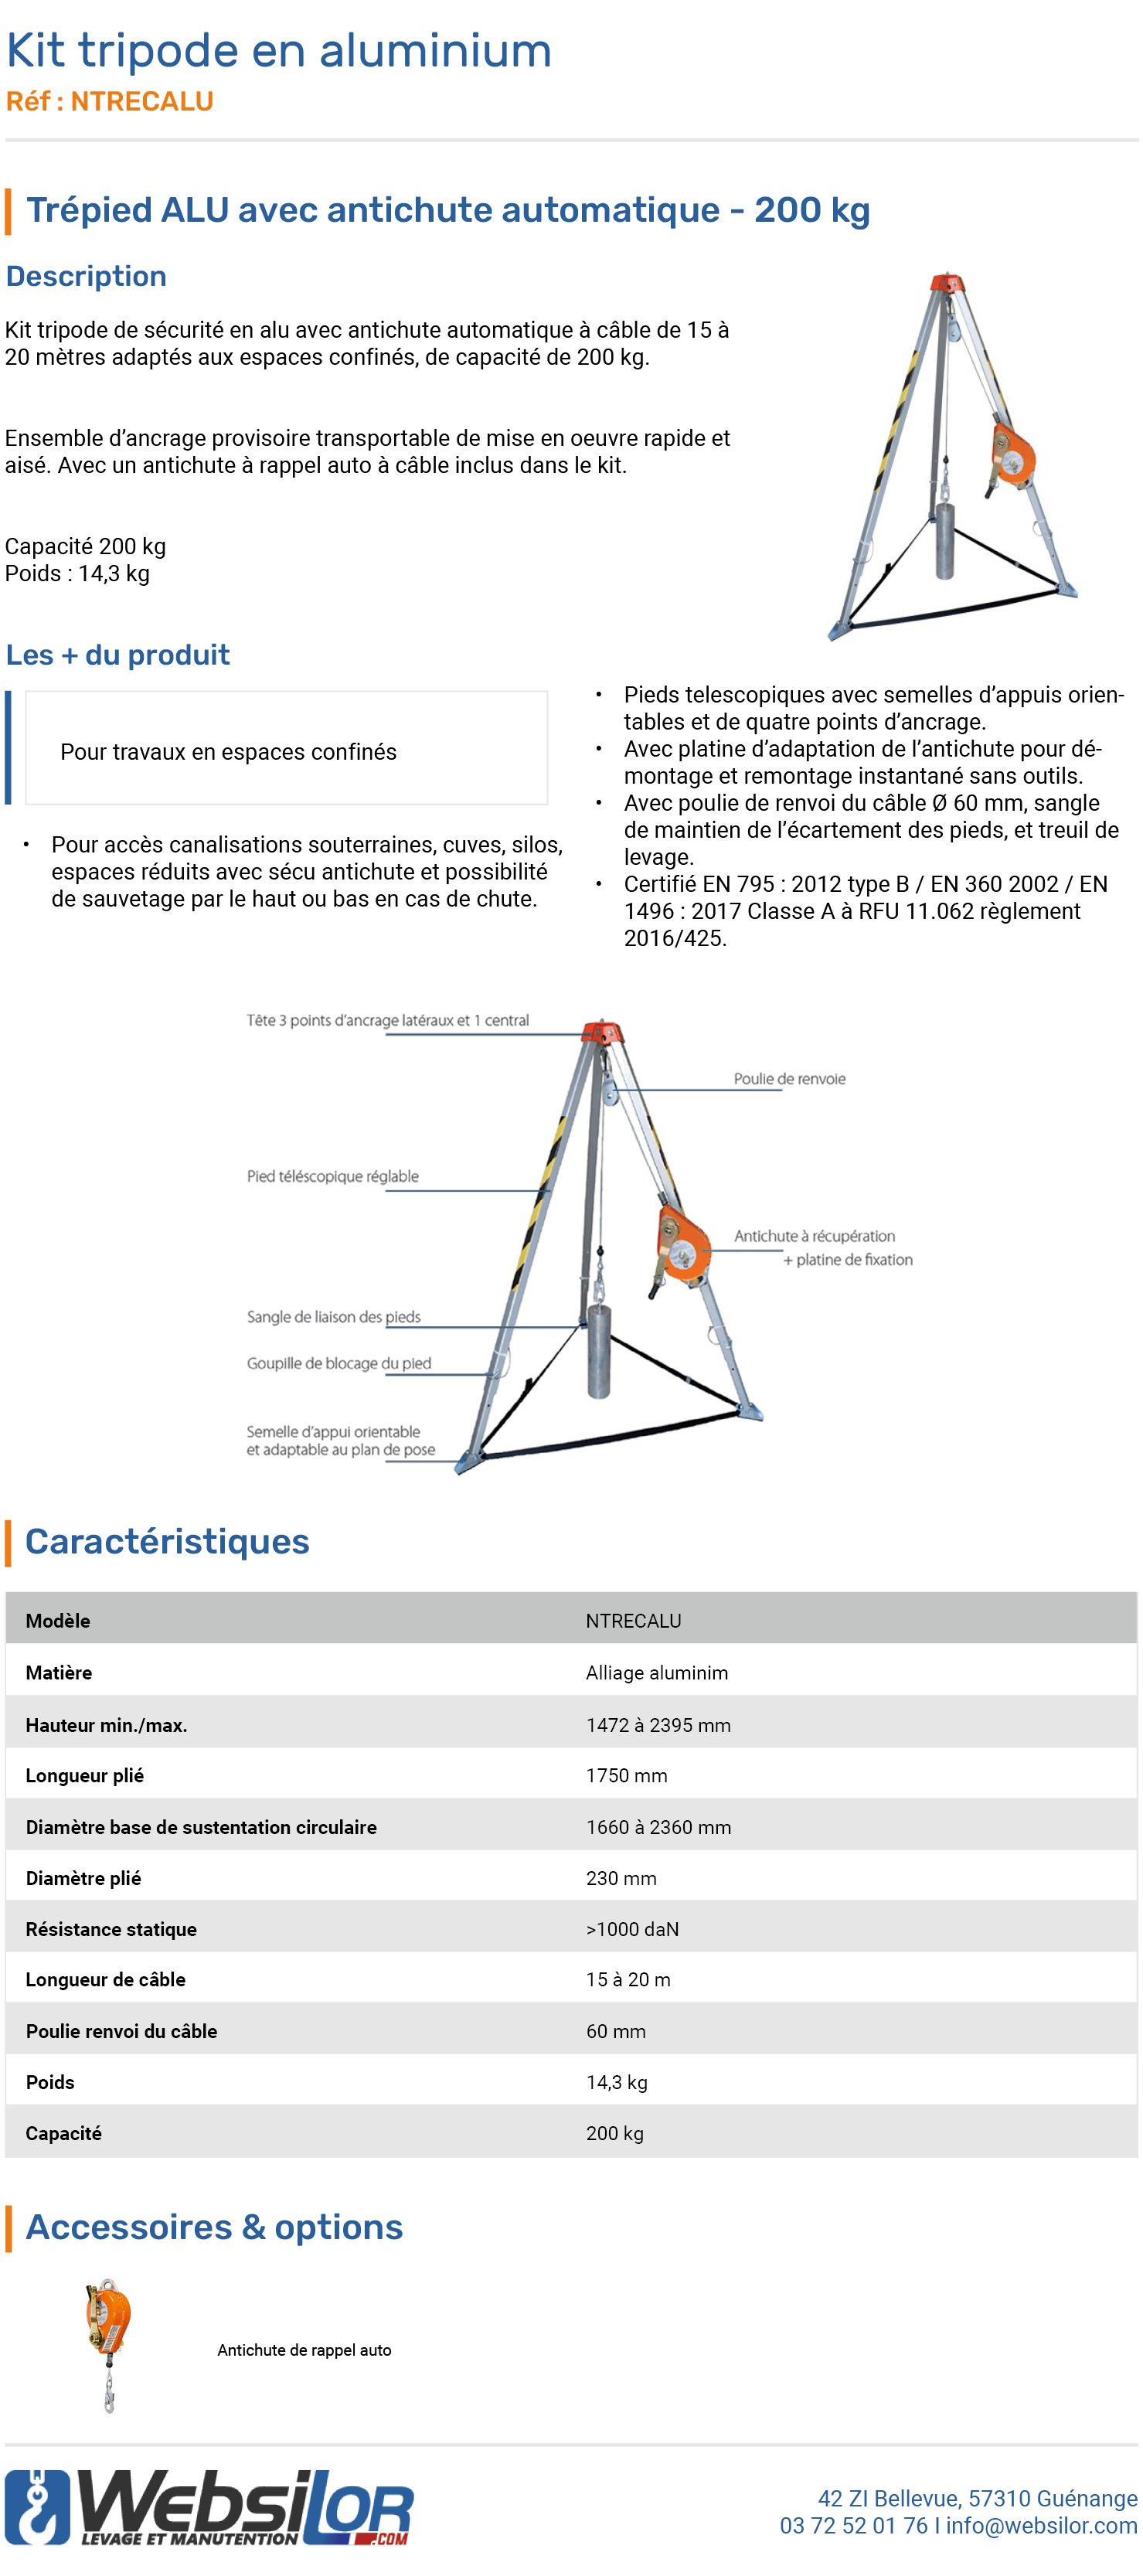 Informations technique de Kit tripode de sécurité avec antichute auto à câble de 20 m